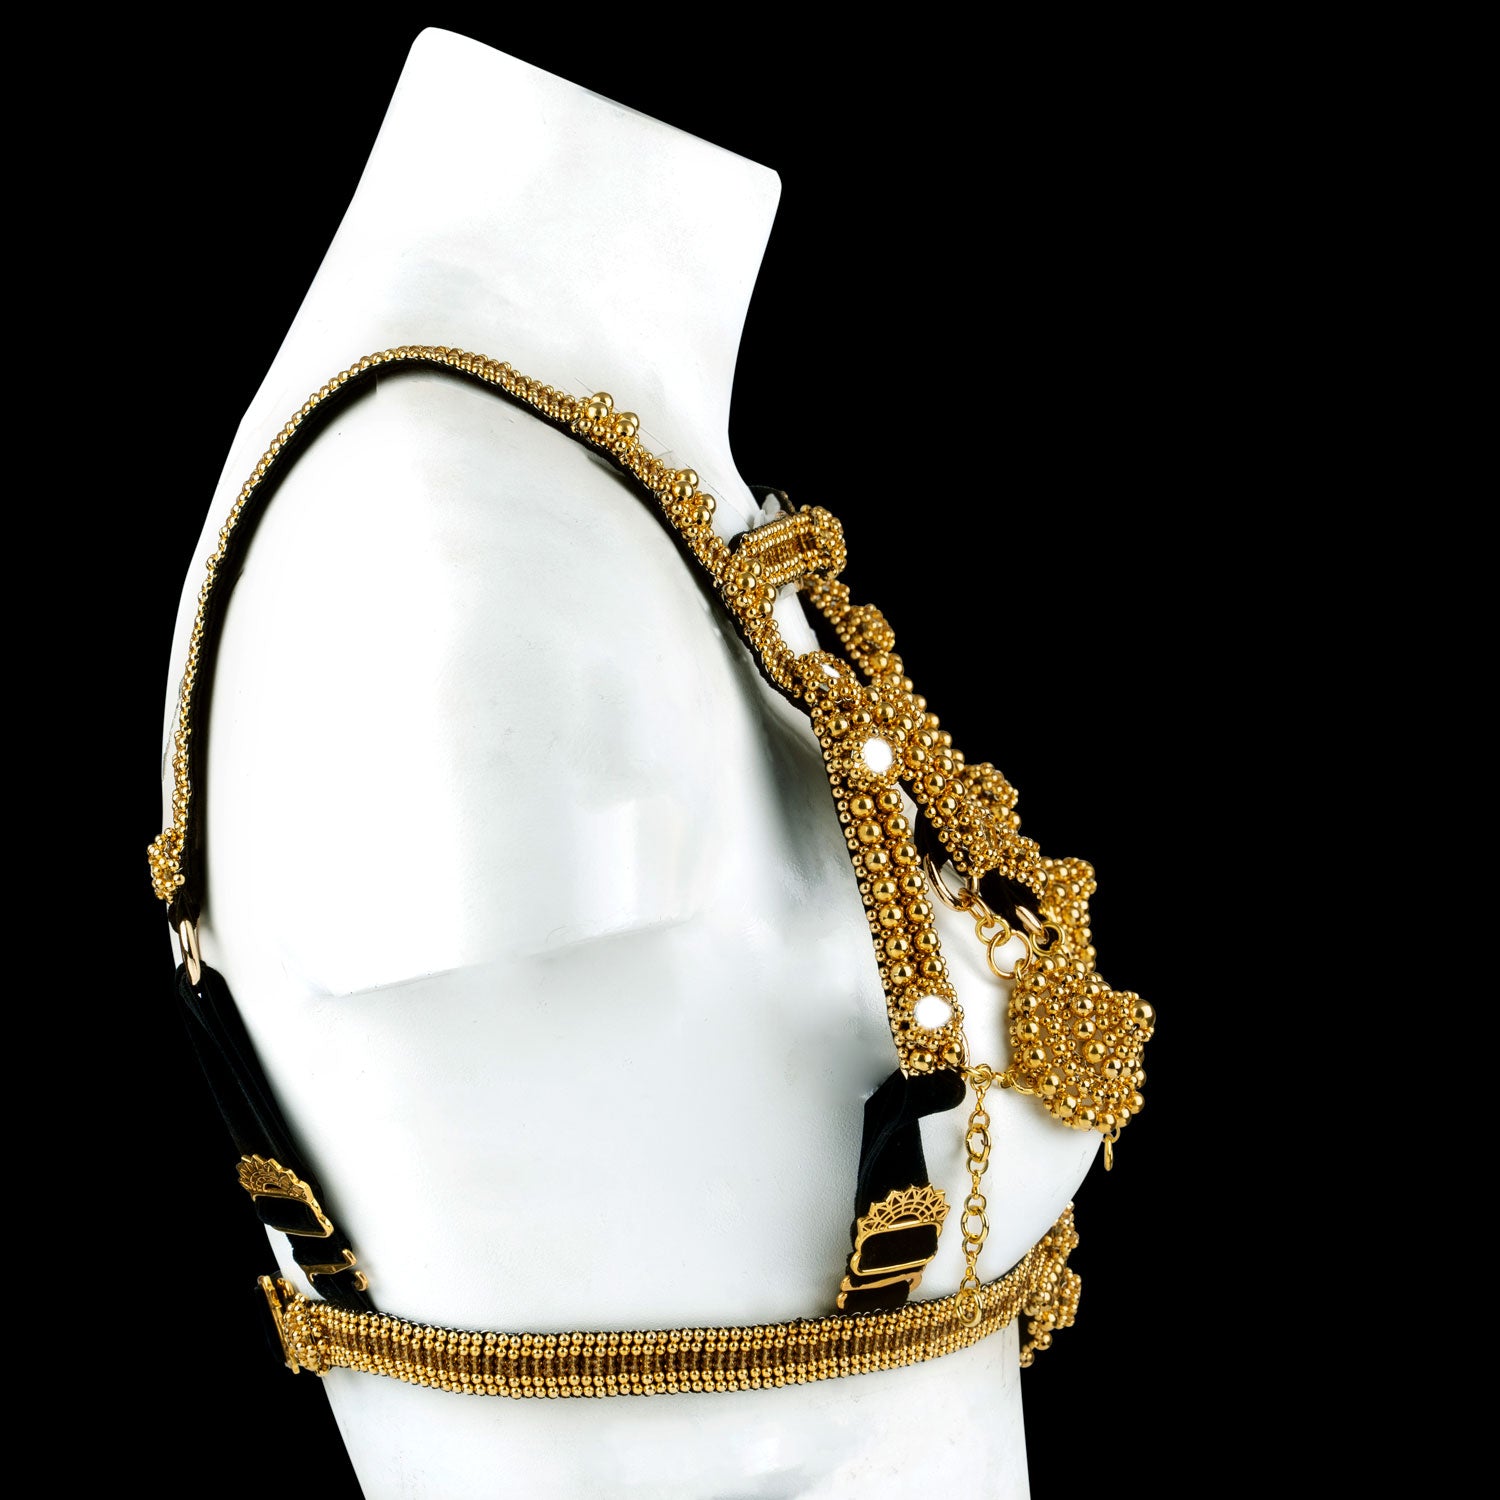 Elohim Modular Harness in Gold